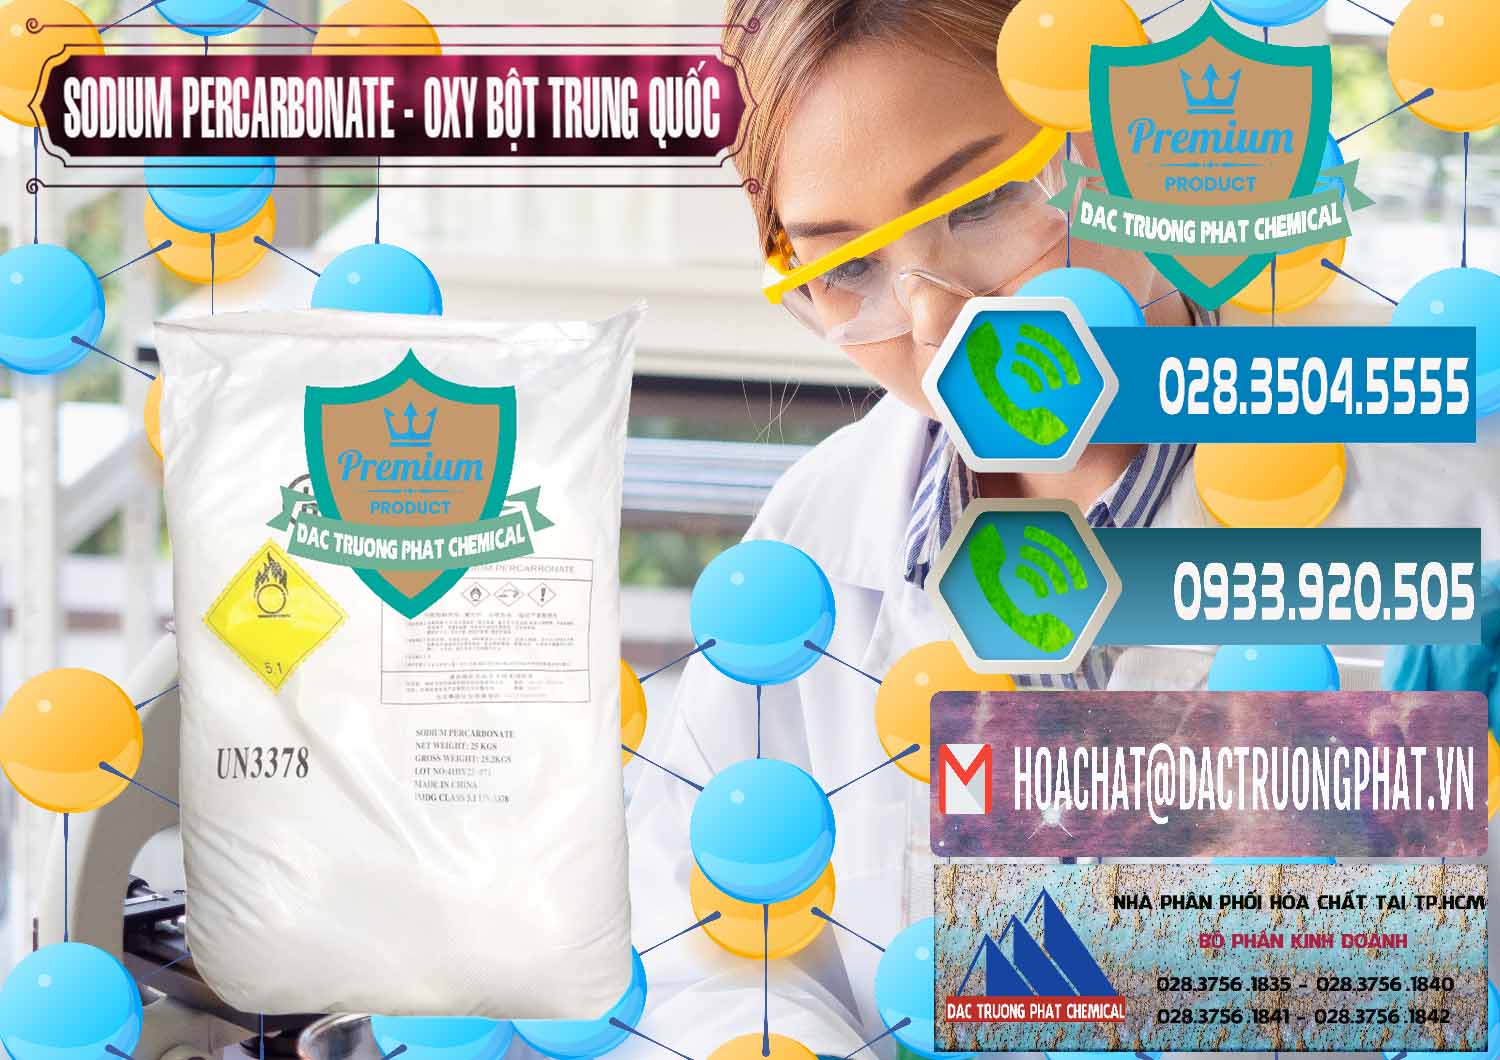 Nơi chuyên cung ứng ( bán ) Sodium Percarbonate Dạng Bột Trung Quốc China - 0390 - Nhà cung cấp ( bán ) hóa chất tại TP.HCM - congtyhoachat.net